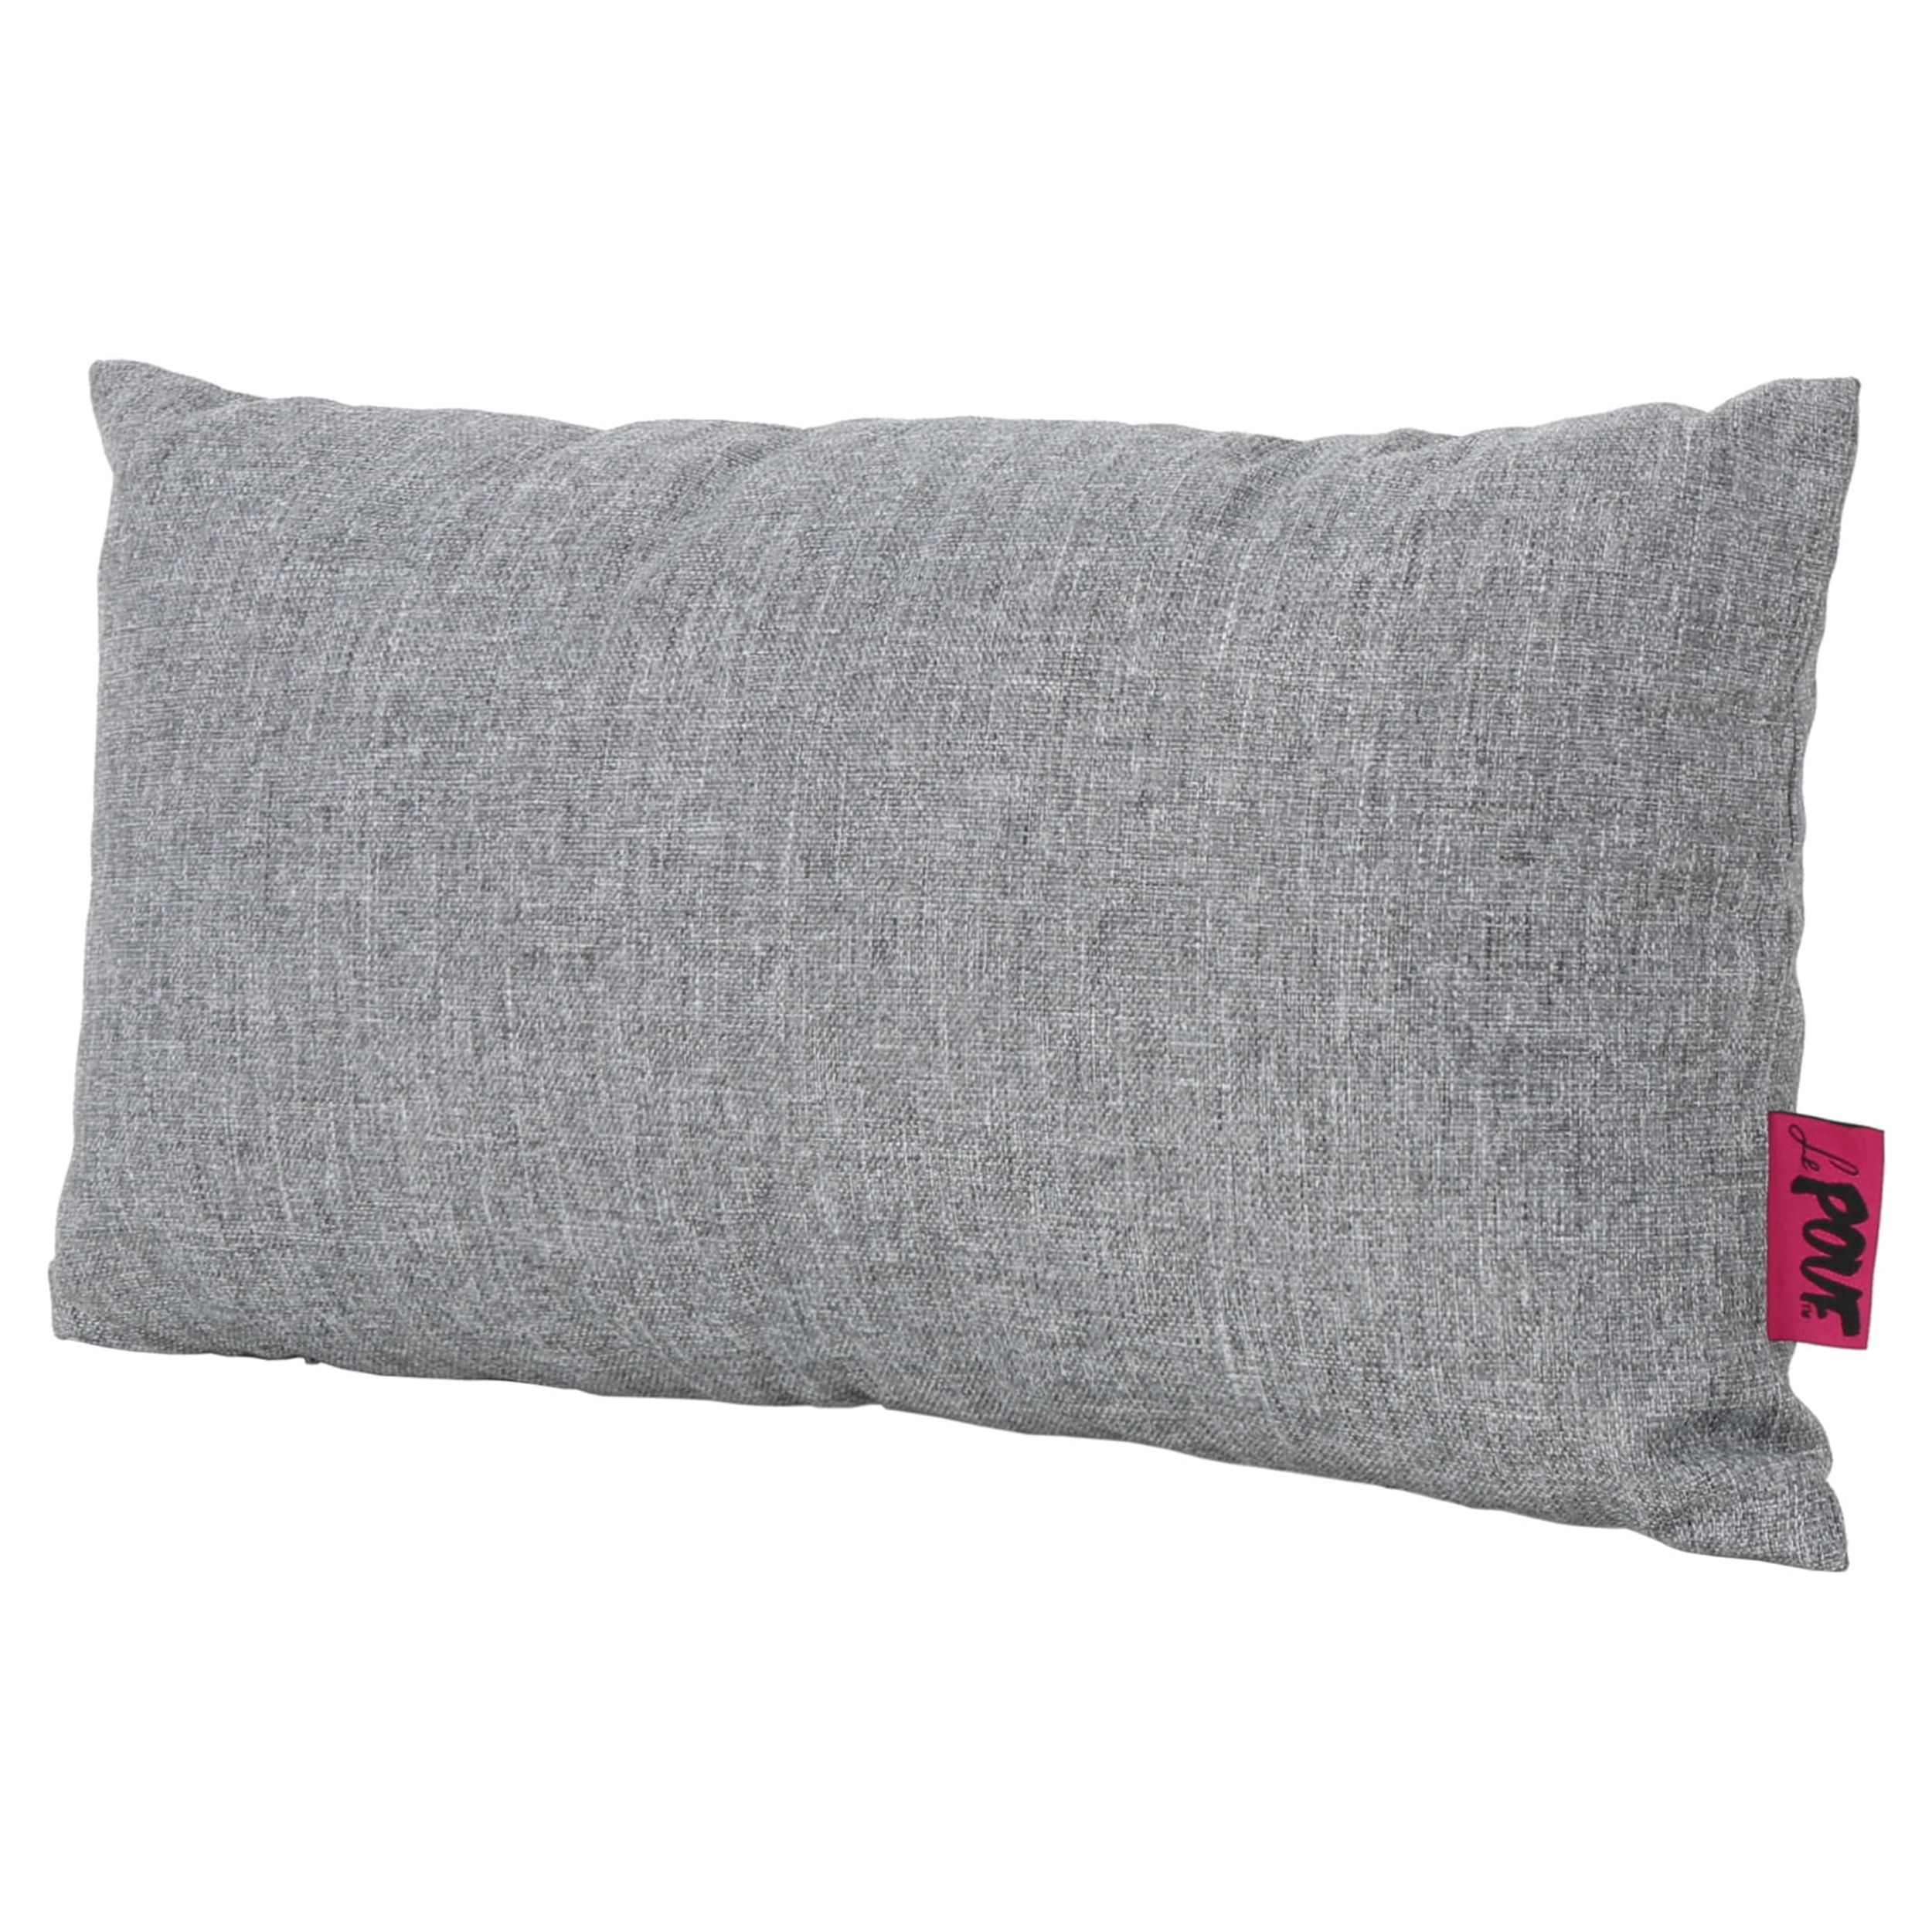 Noble House Coronado 18.5x11.5" Outdoor Fabric Throw Pillow in Gray - image 1 of 11